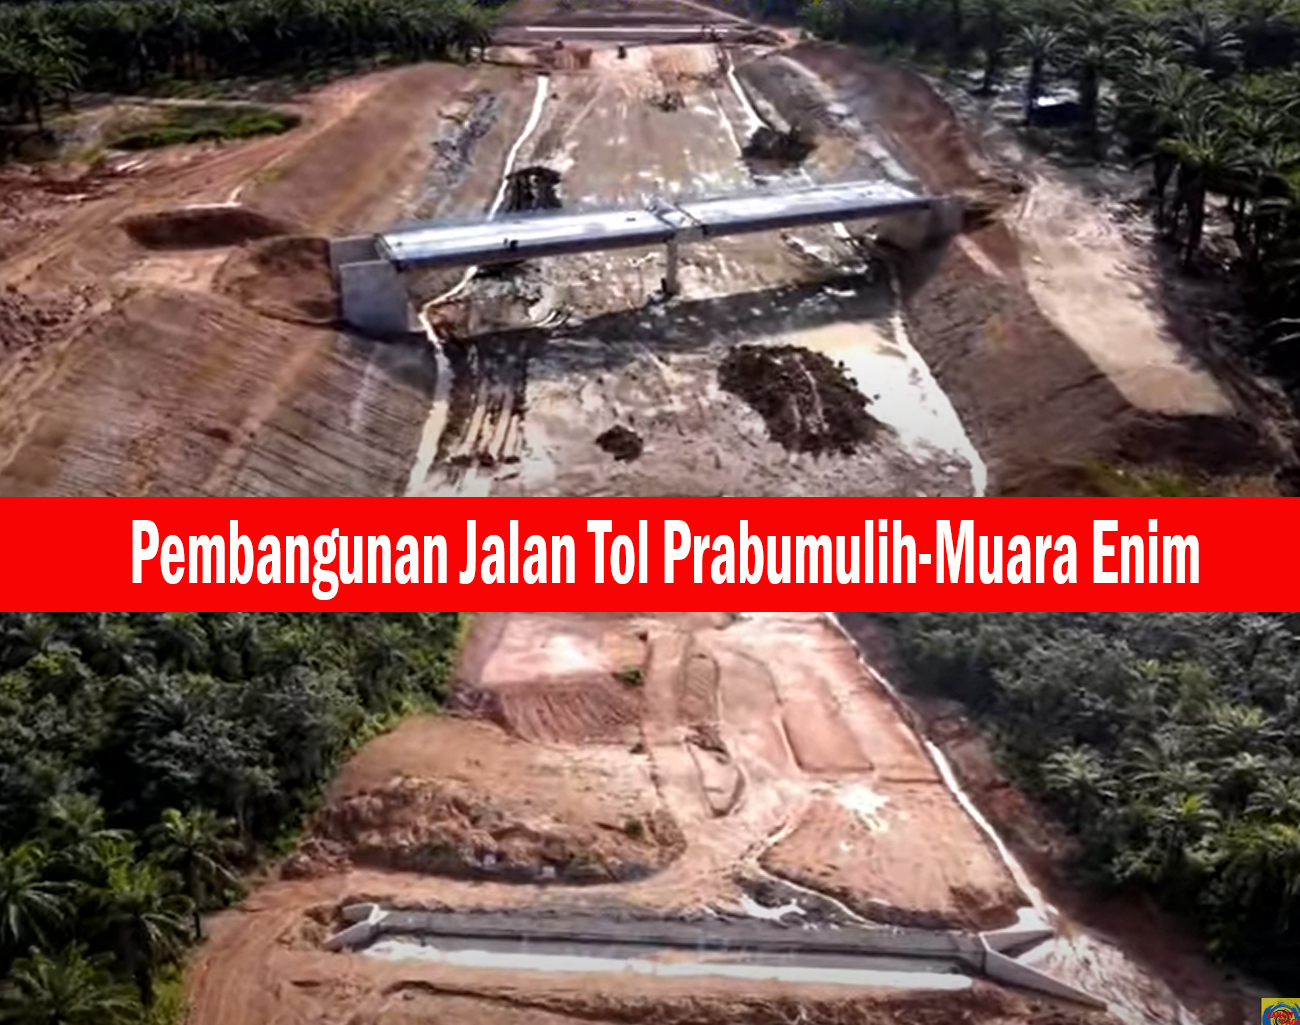 Hutama Karya Sudah Siap Rekonstruksi Pembangunan Jalan Tol Prabumulih-Muara Enim, Tunggu Instruksi Pemerintah